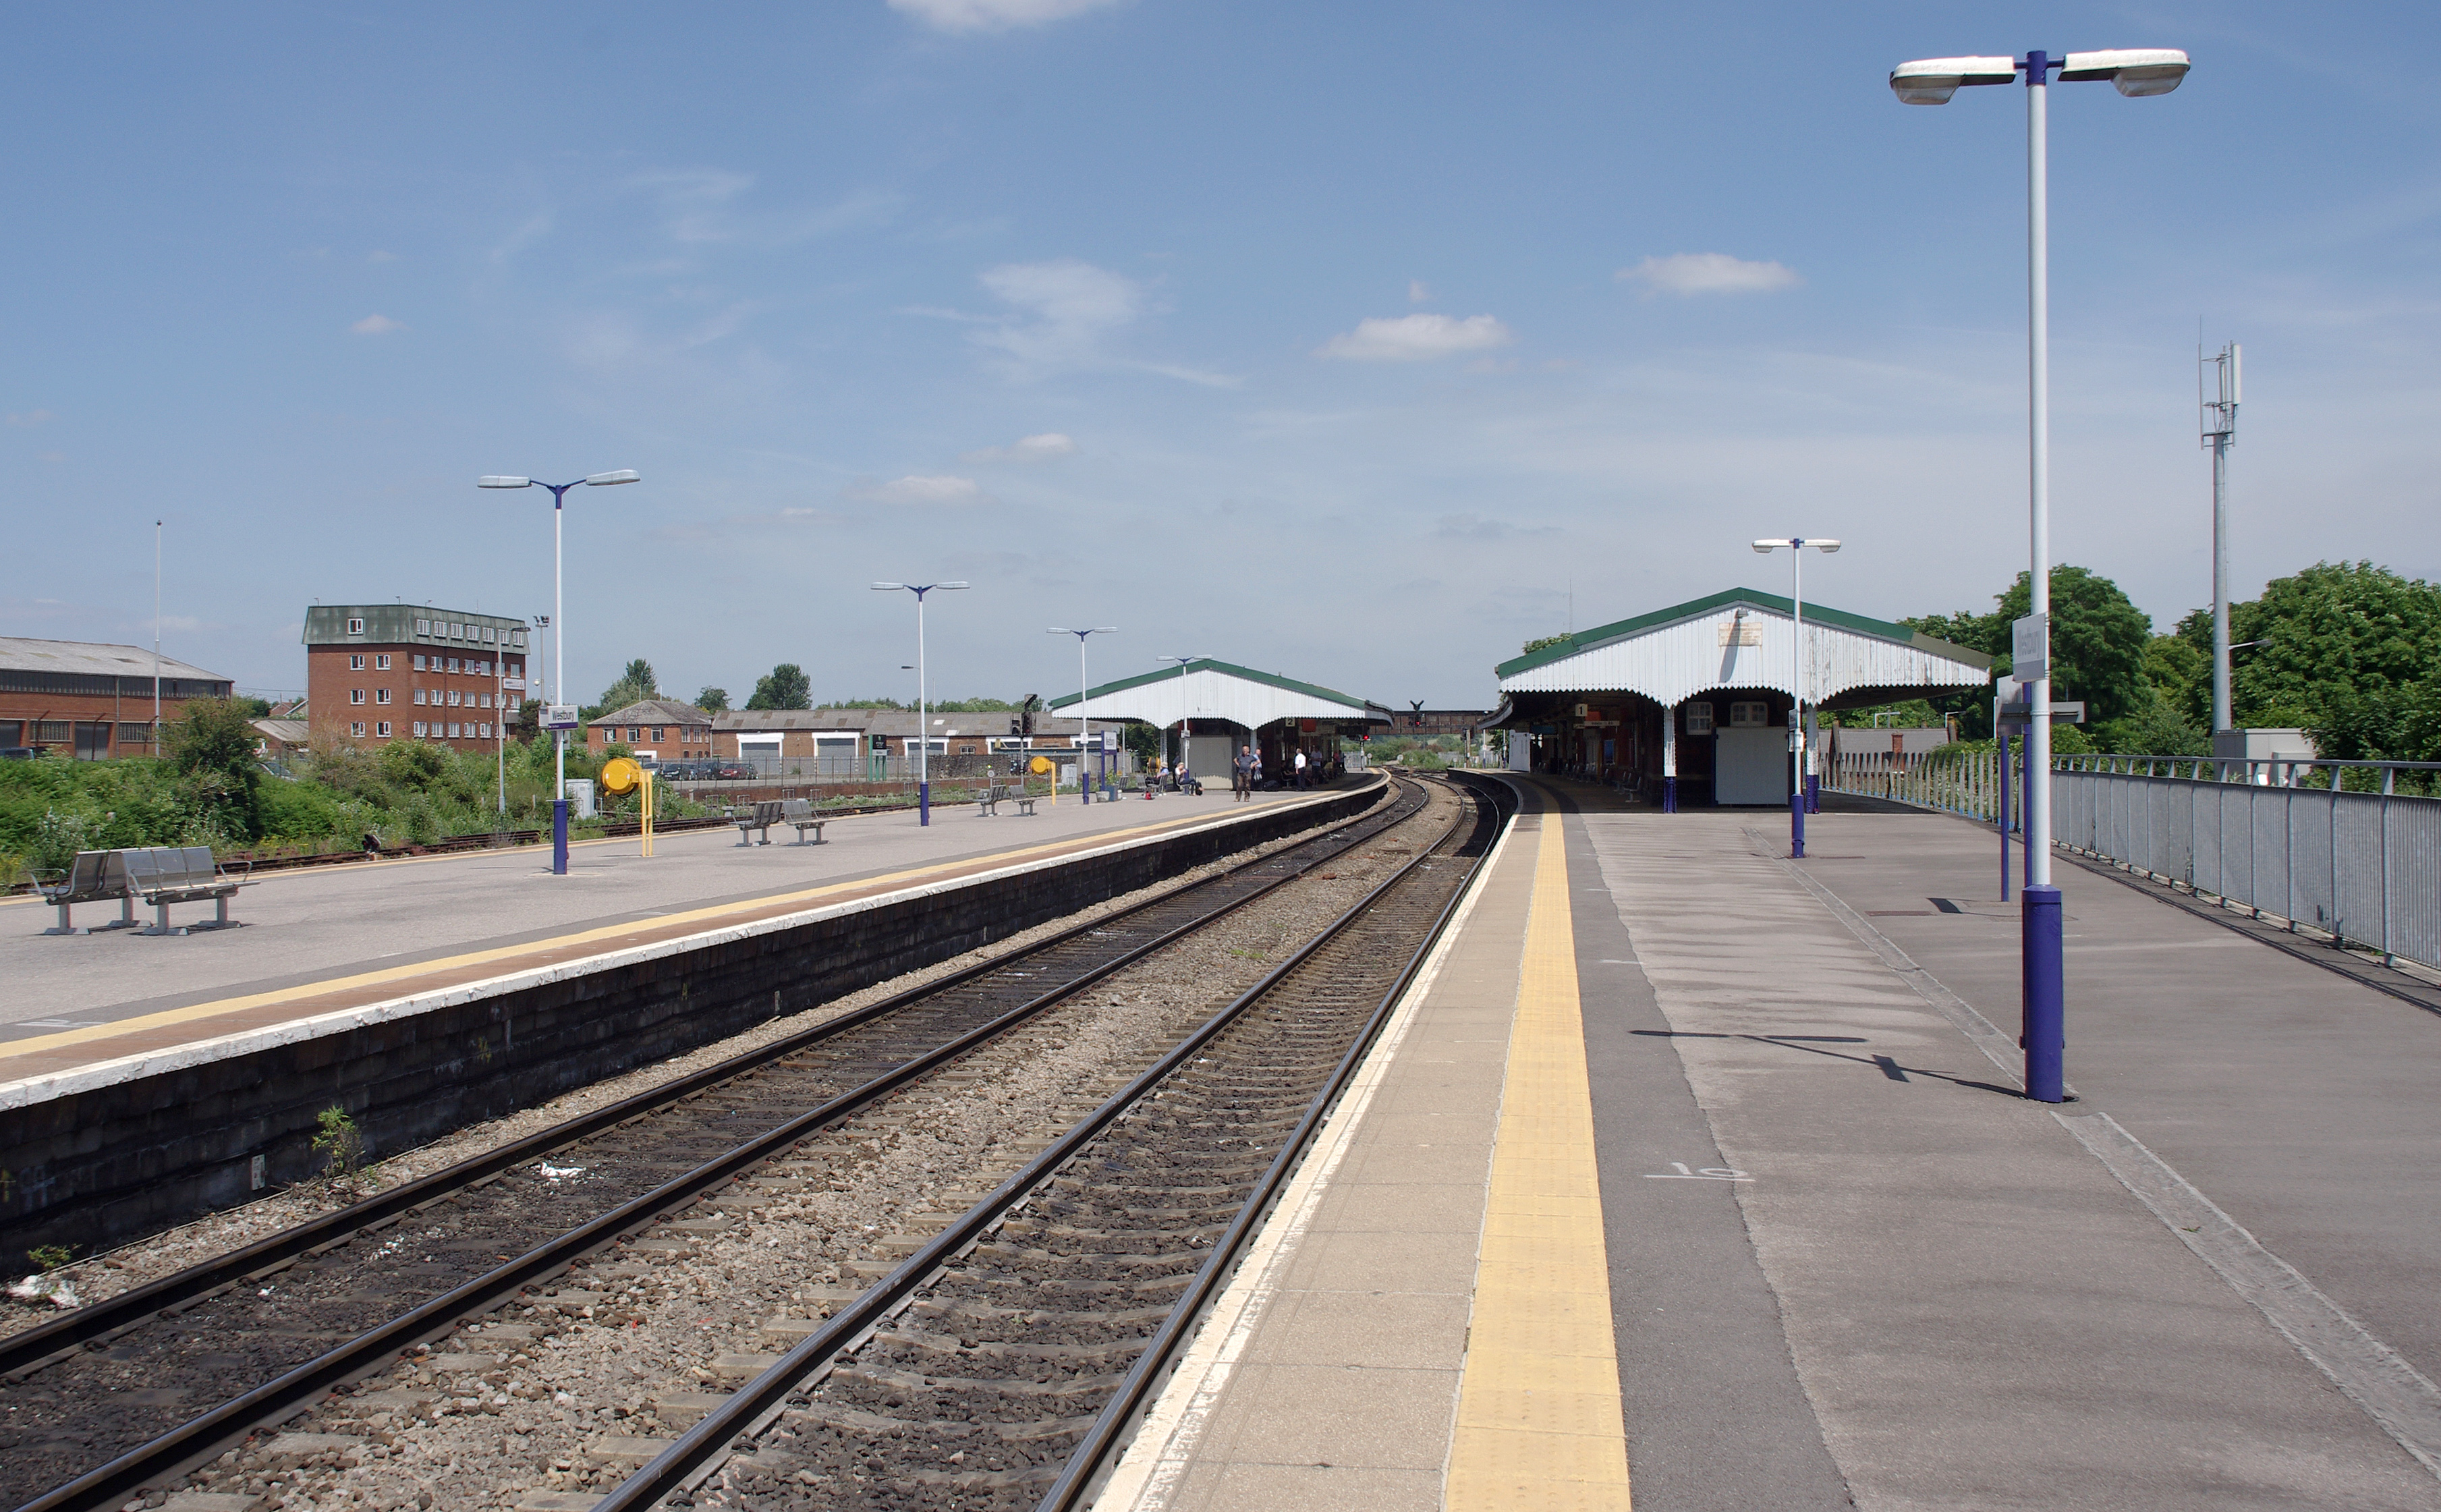 Westbury railway station MMB 31